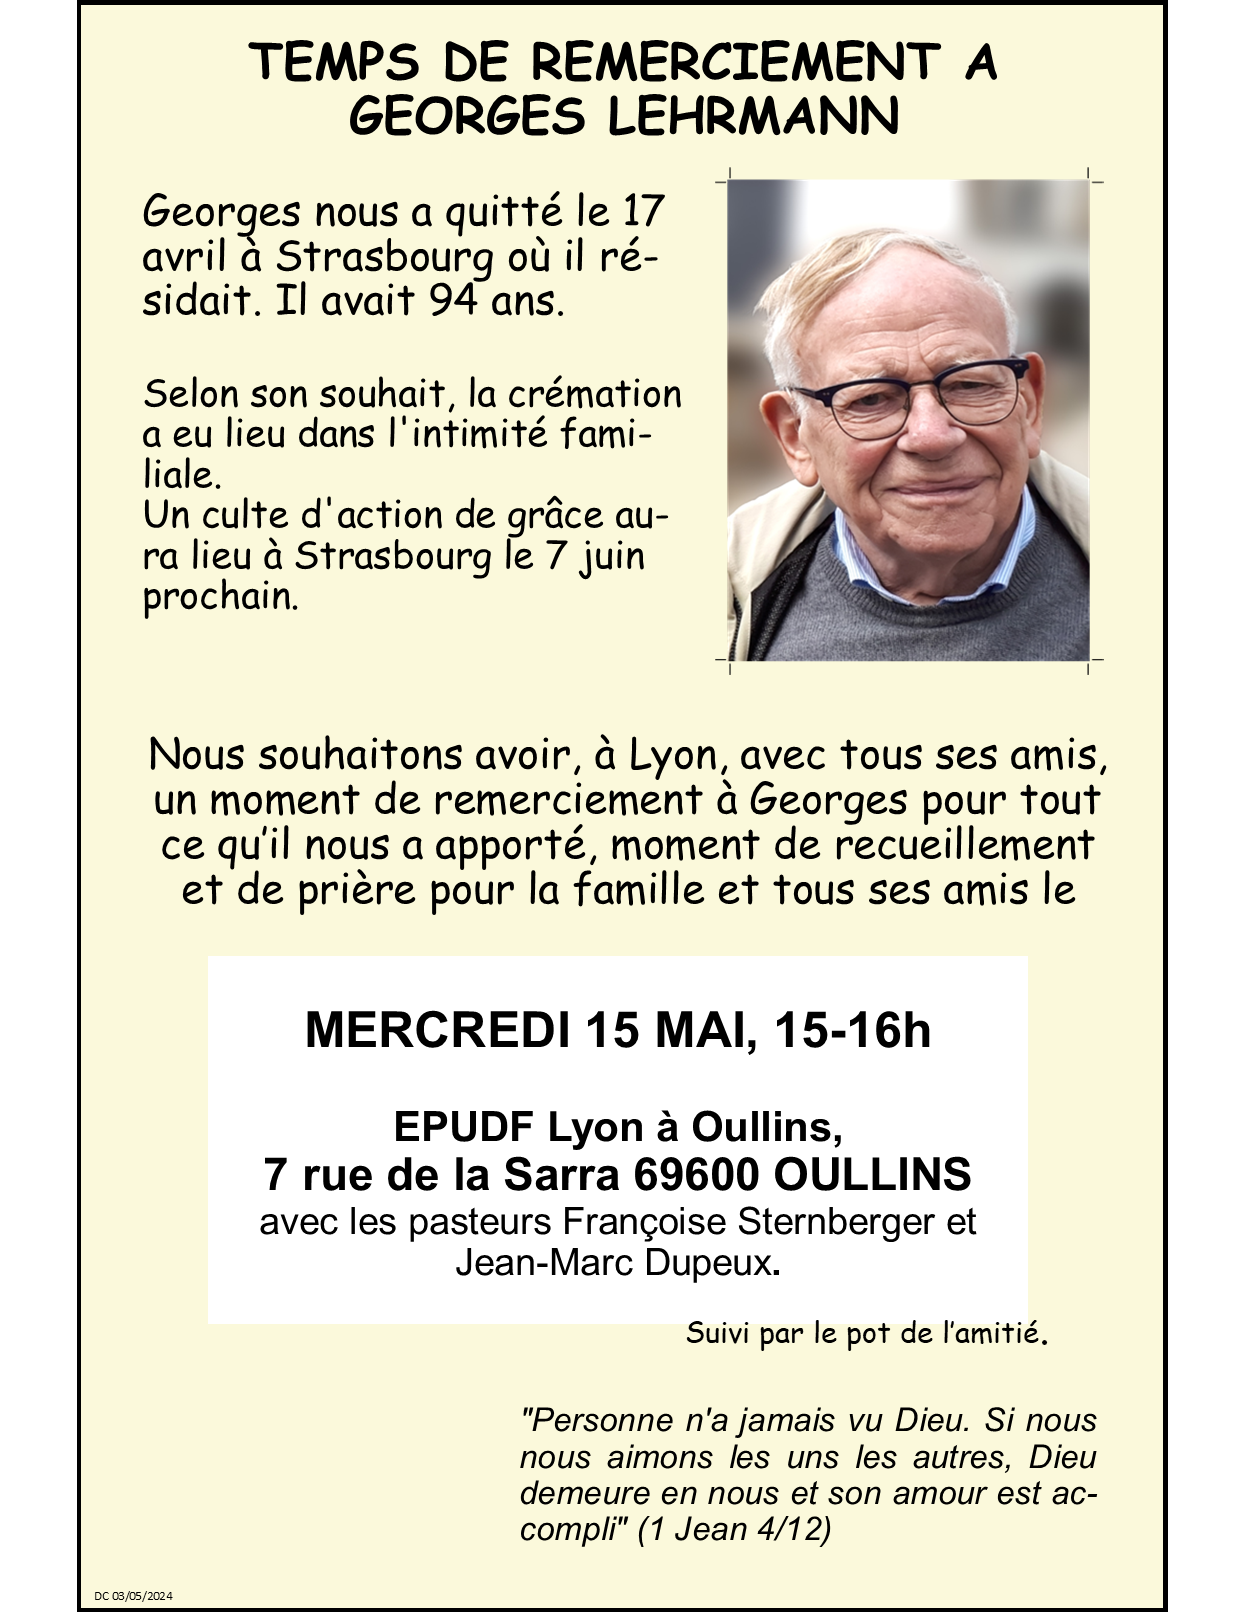 Georges Lehrmann, temp de remerciement, le Mercredi 15 Mai à 15h00 à la Sarra